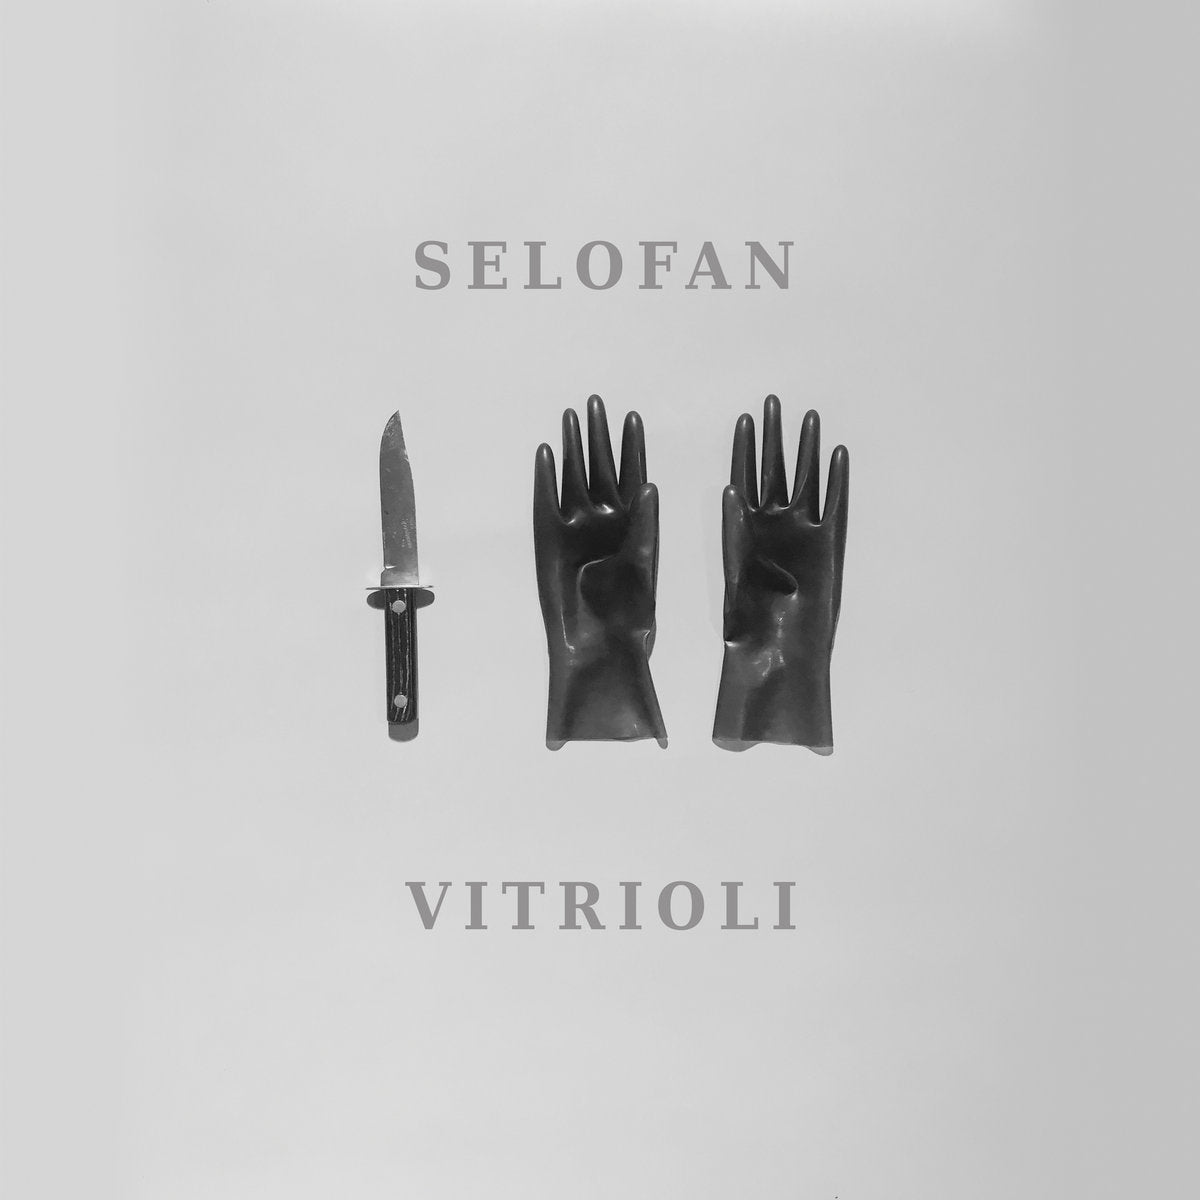 Selofan "Vitrioli"